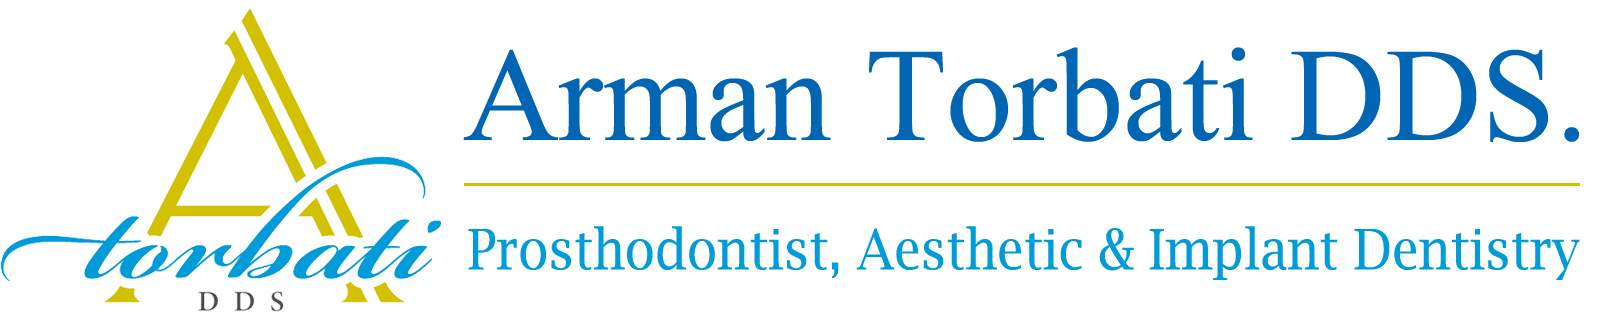 Prosthodontist, Aesthetic & Implant Dentistry